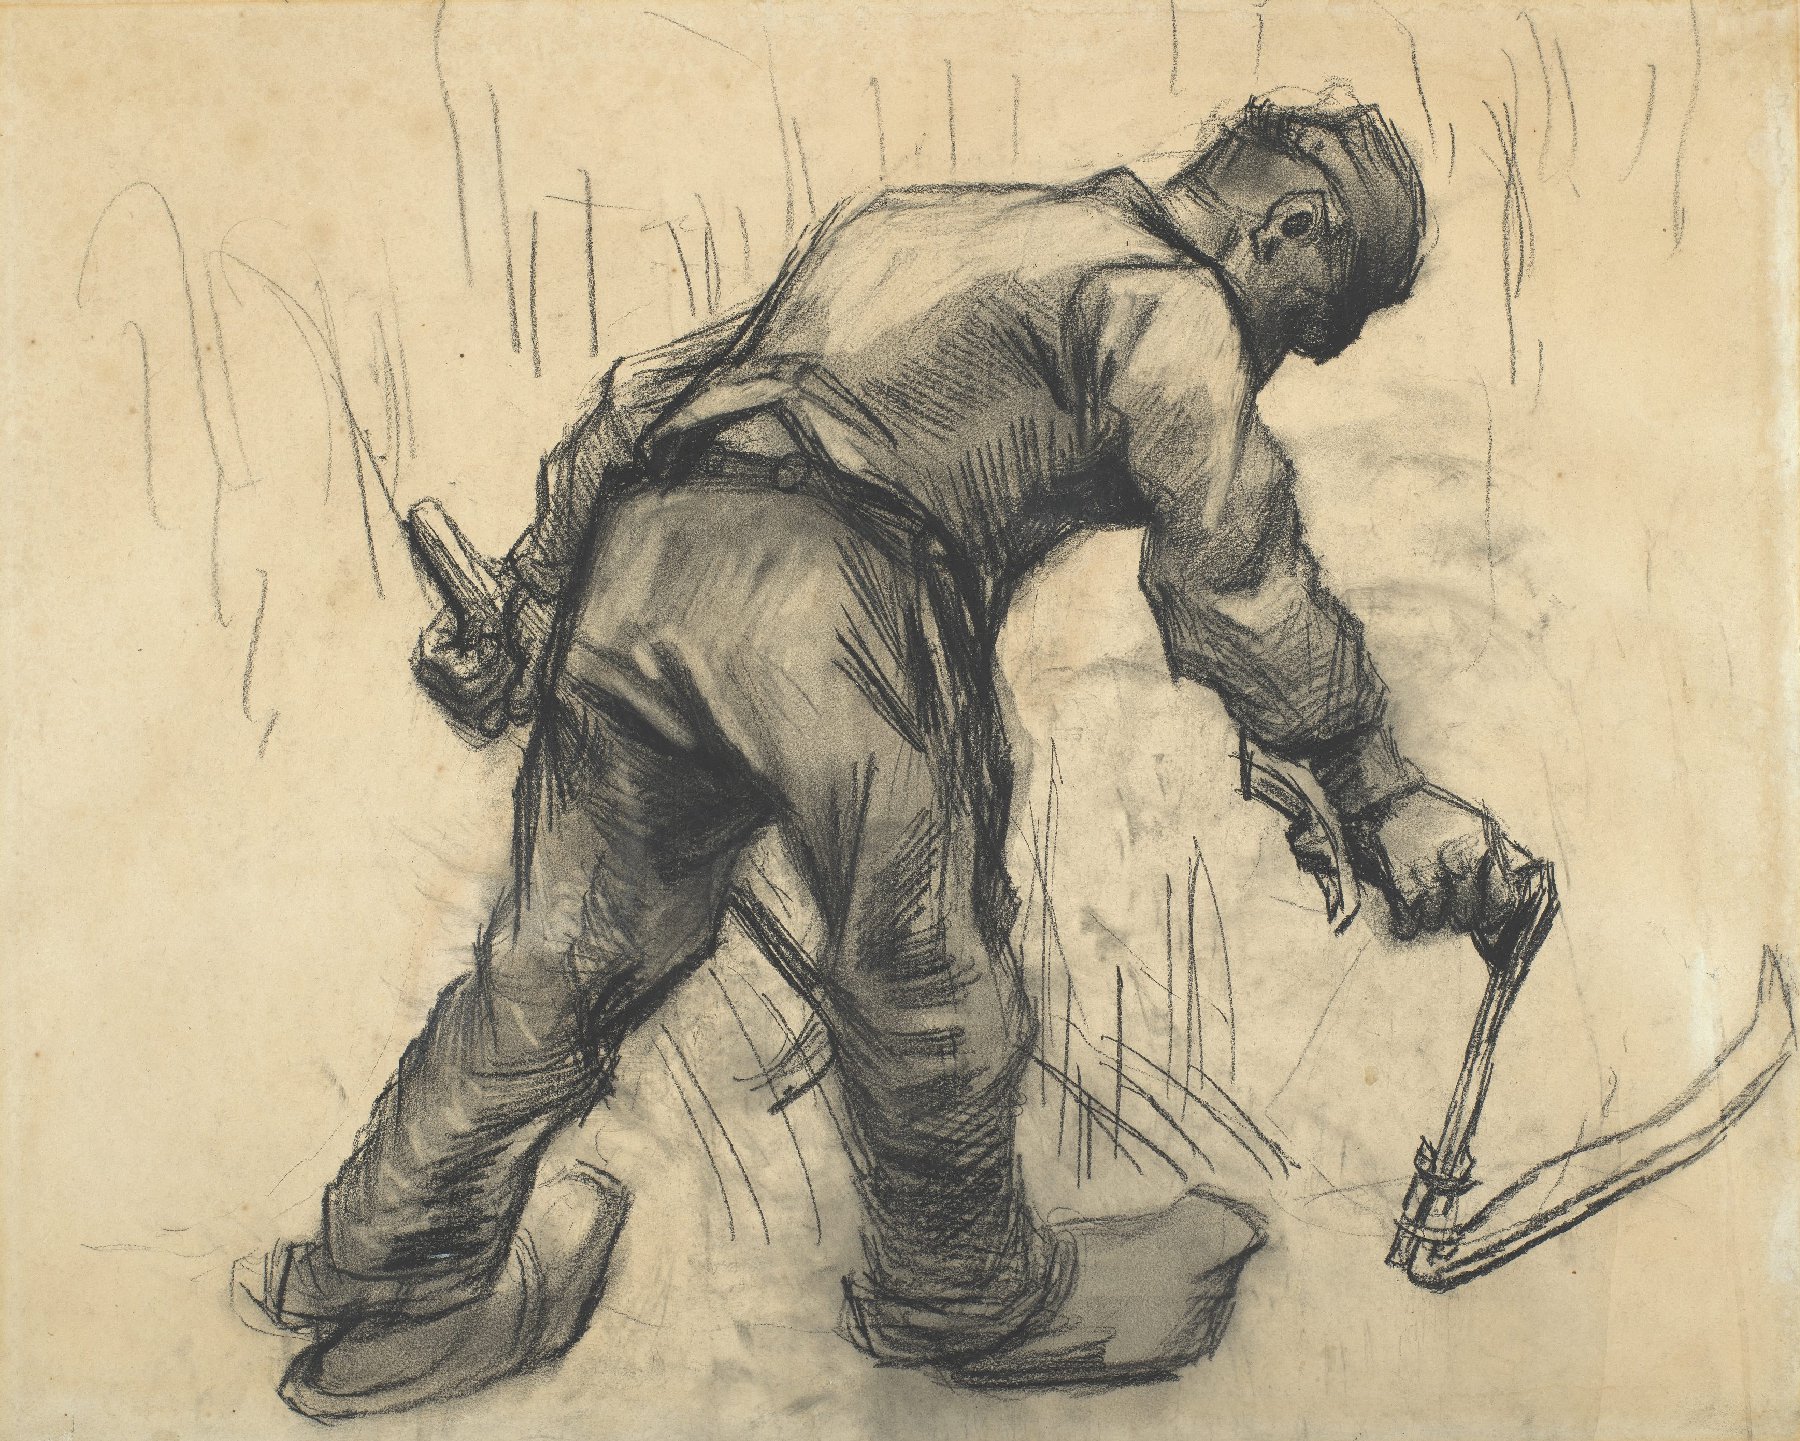 Maaier Vincent van Gogh (1853 - 1890), Nuenen, juli-september 1885